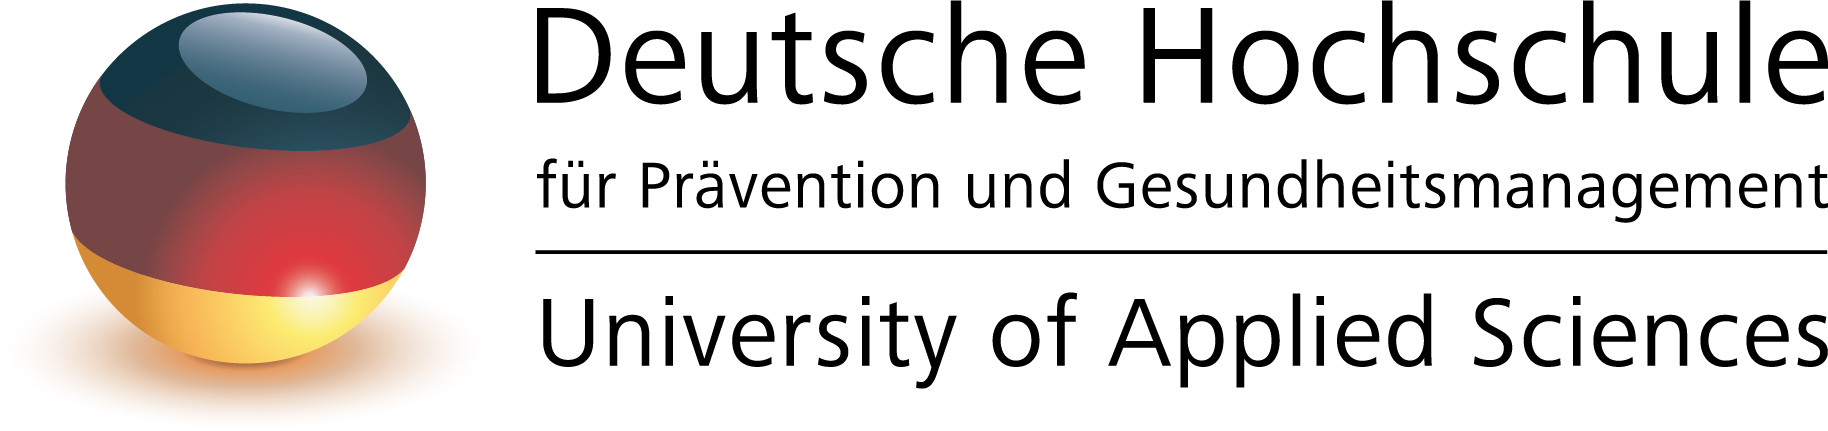 Deutsche Hochschule für Prävention und Gesundheitsmanagement - Studienzentrum Leipzig Logo